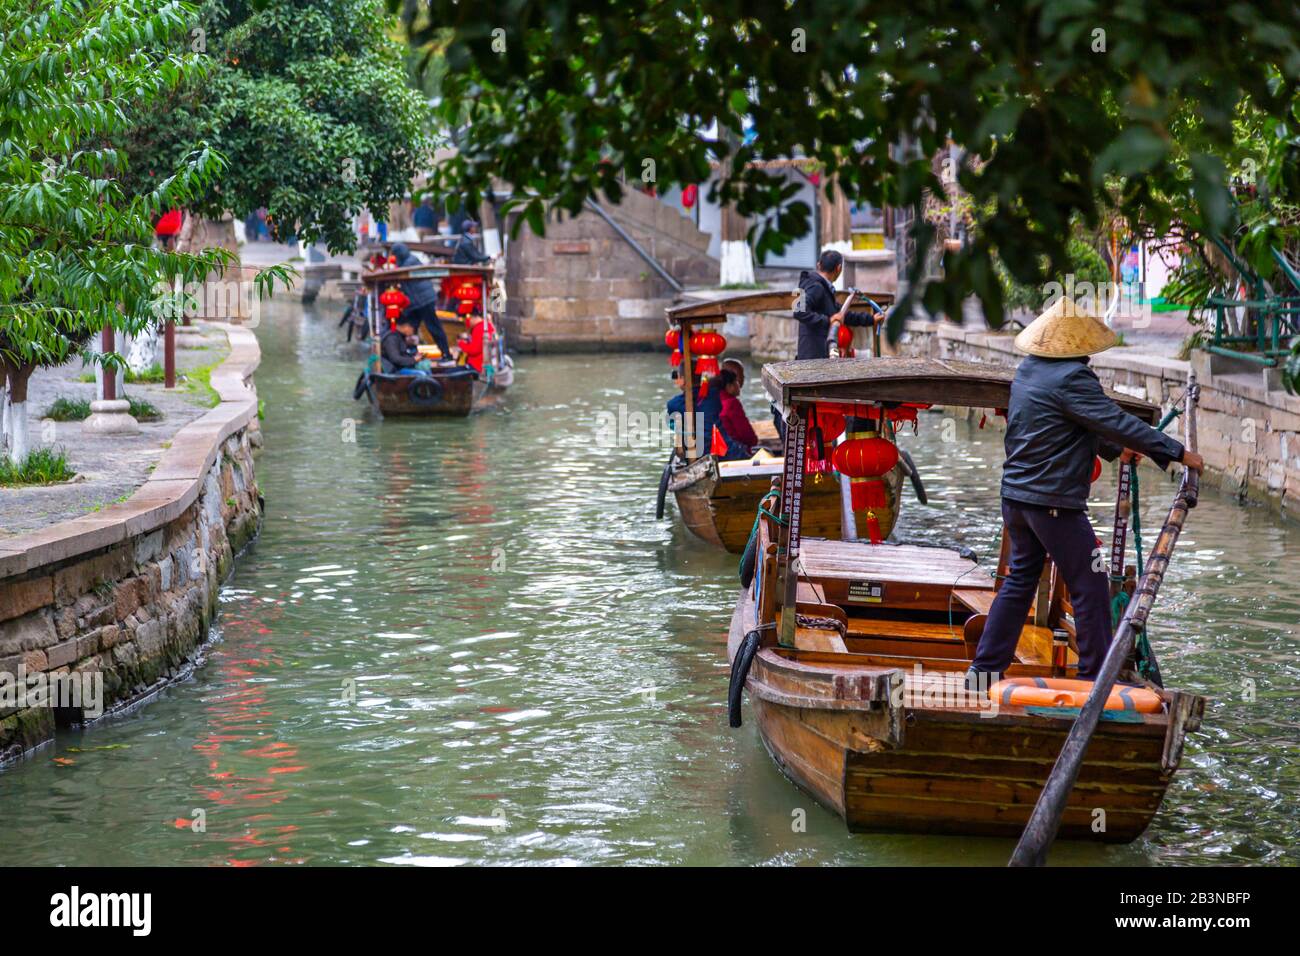 View of boats on waterway in Zhujiajiaozhen water town, Qingpu District, Shanghai, China, Asia Stock Photo